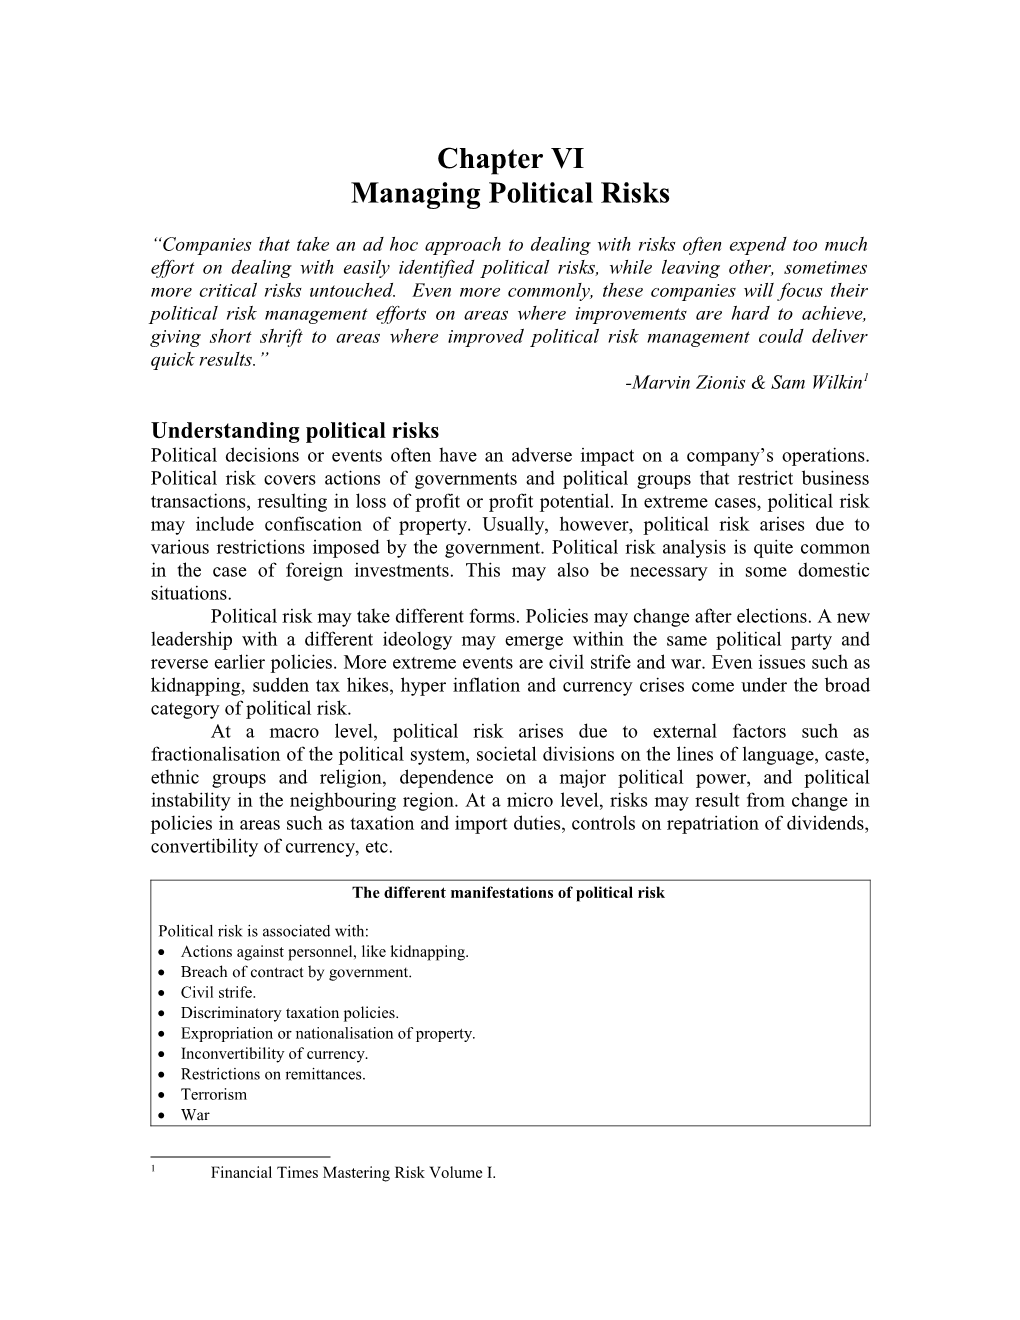 Managing Political Risks